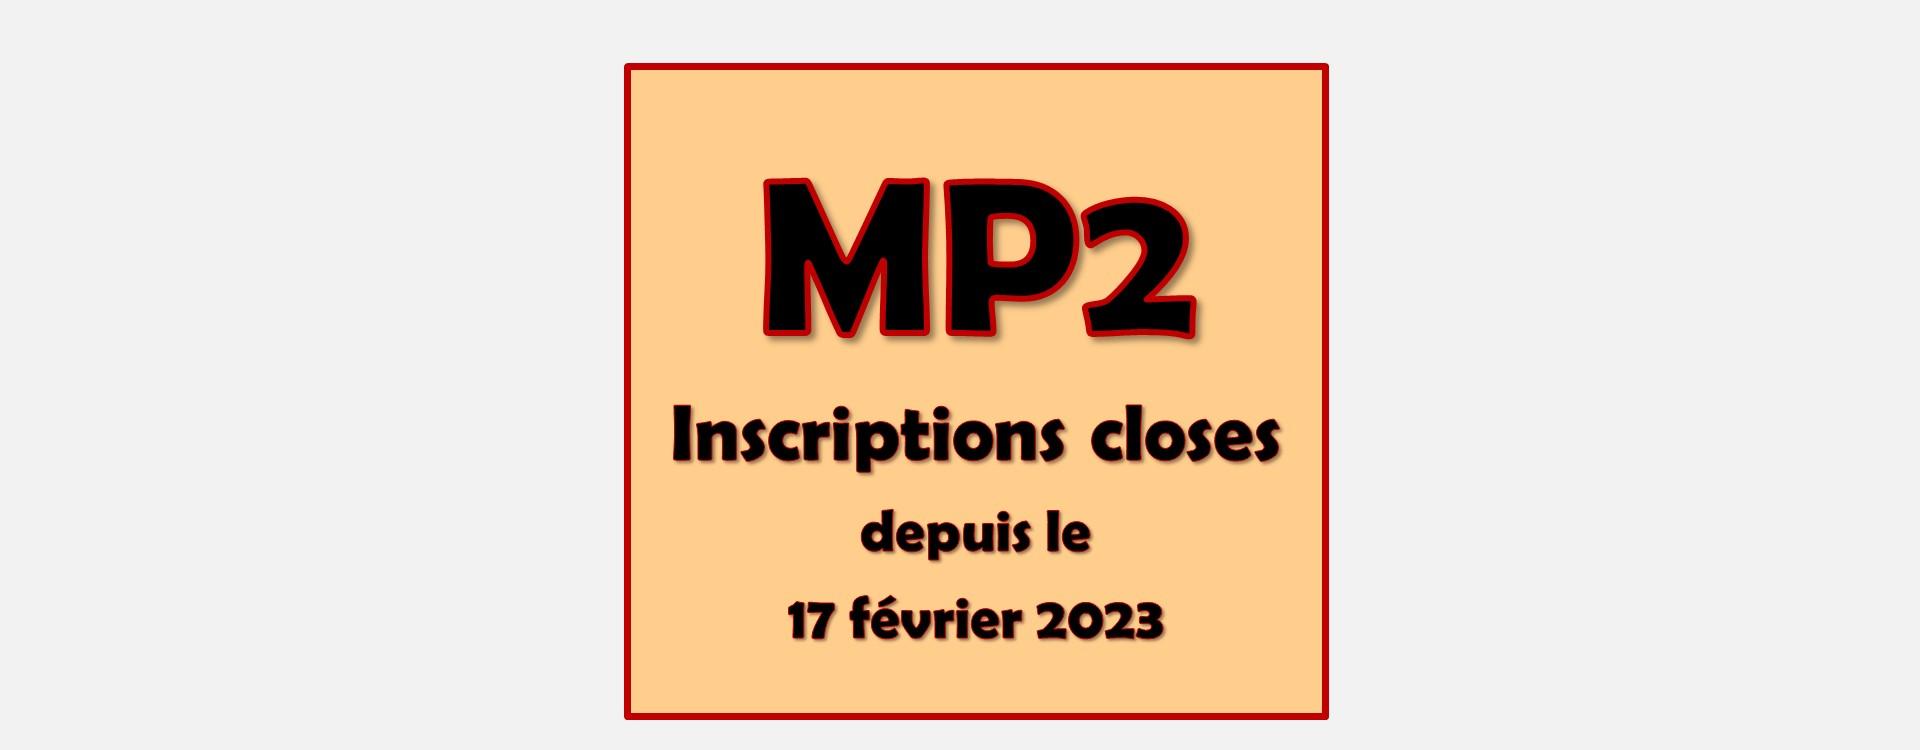 MP2 - Inscriptions closes